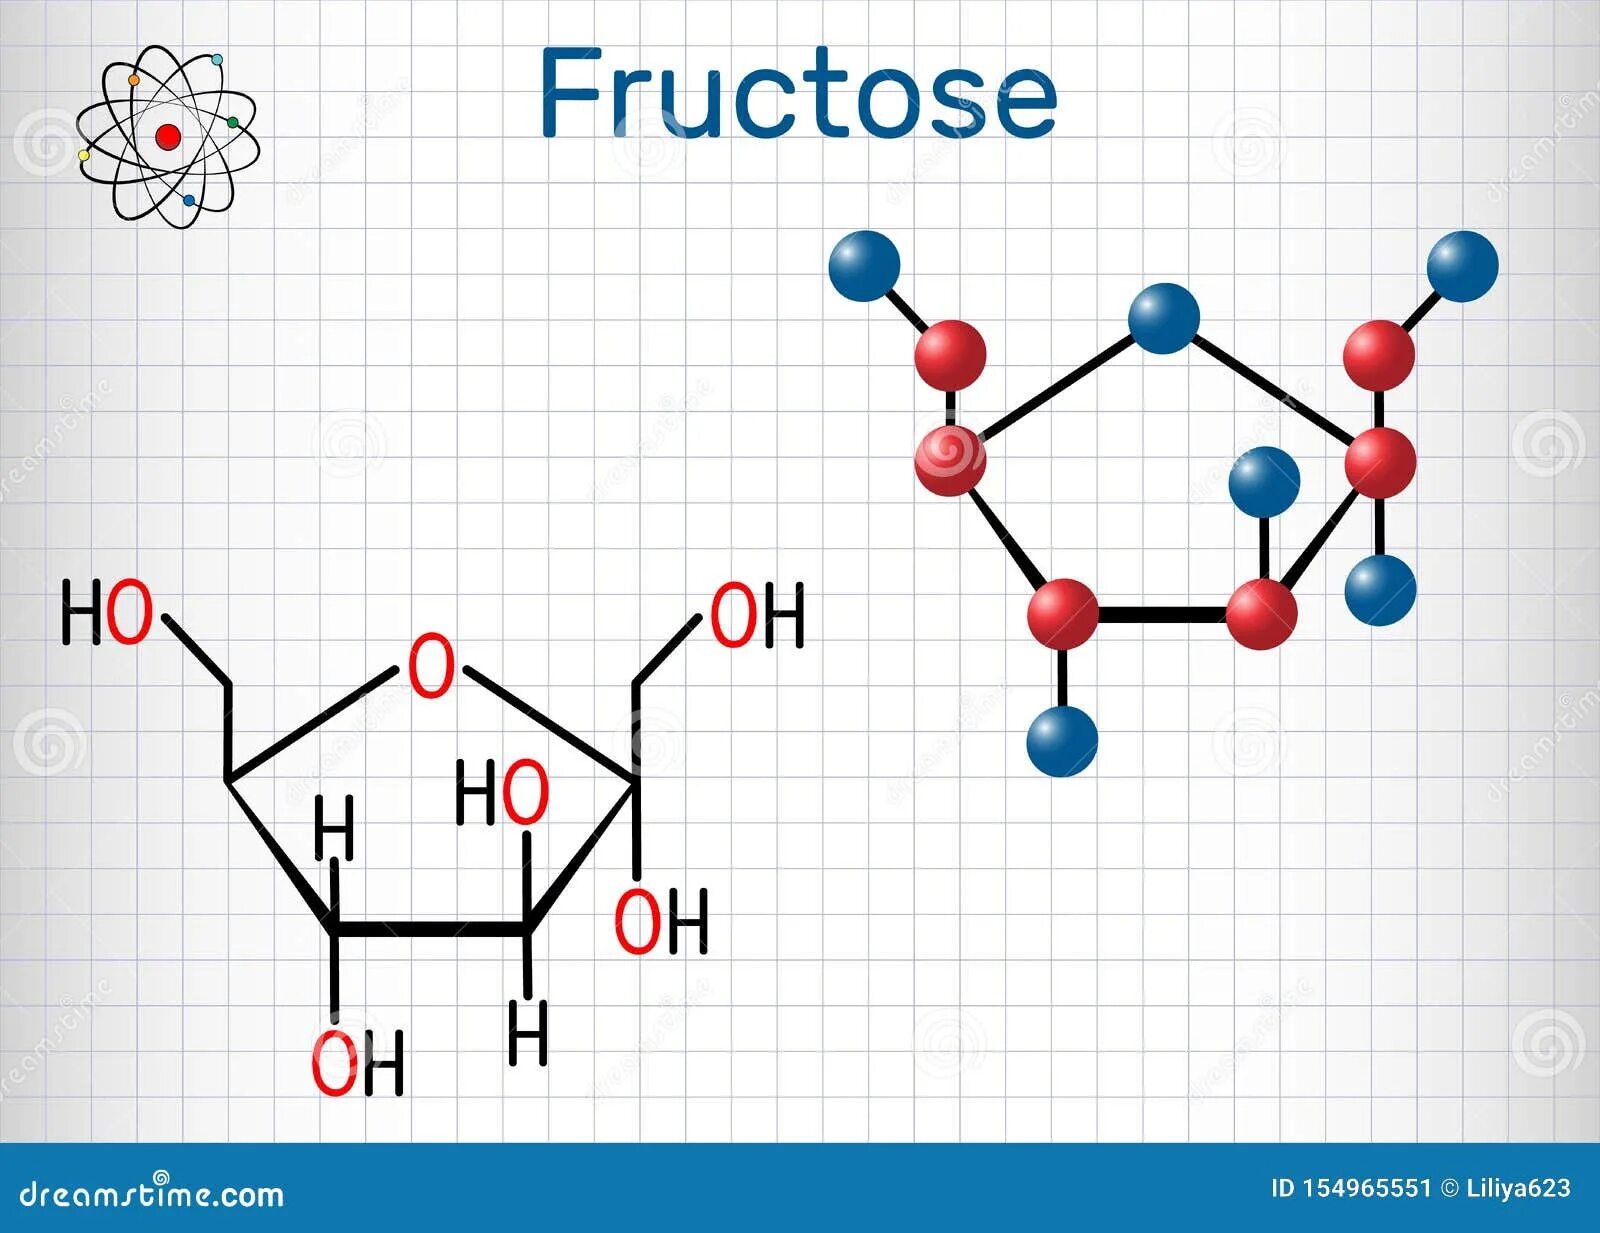 Молекула фруктозы формула. Молекулярная и структурная формула фруктозы. Структурная молекула фруктозы. Молекулярная формула фруктозы.